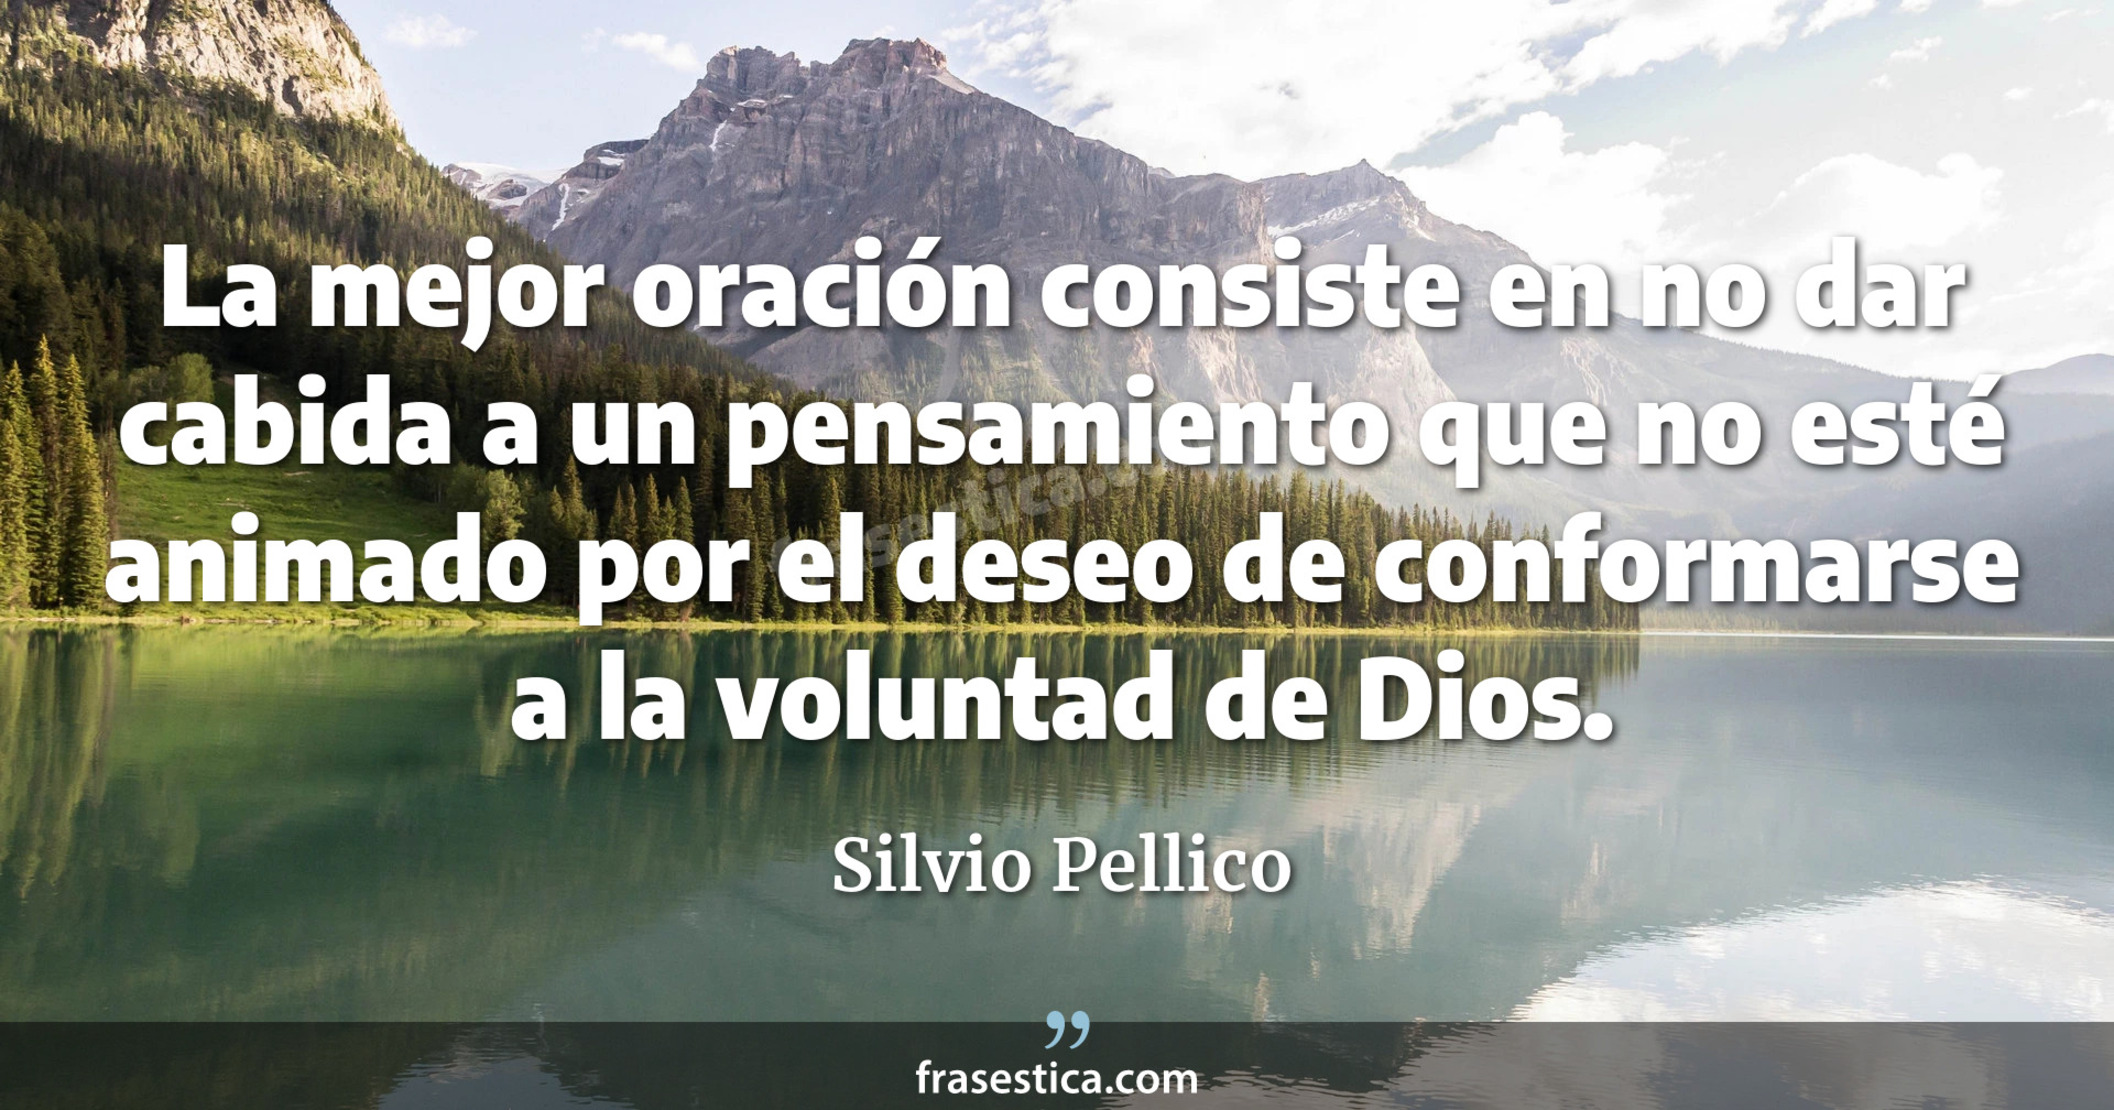 La mejor oración consiste en no dar cabida a un pensamiento que no esté animado por el deseo de conformarse a la voluntad de Dios.  - Silvio Pellico